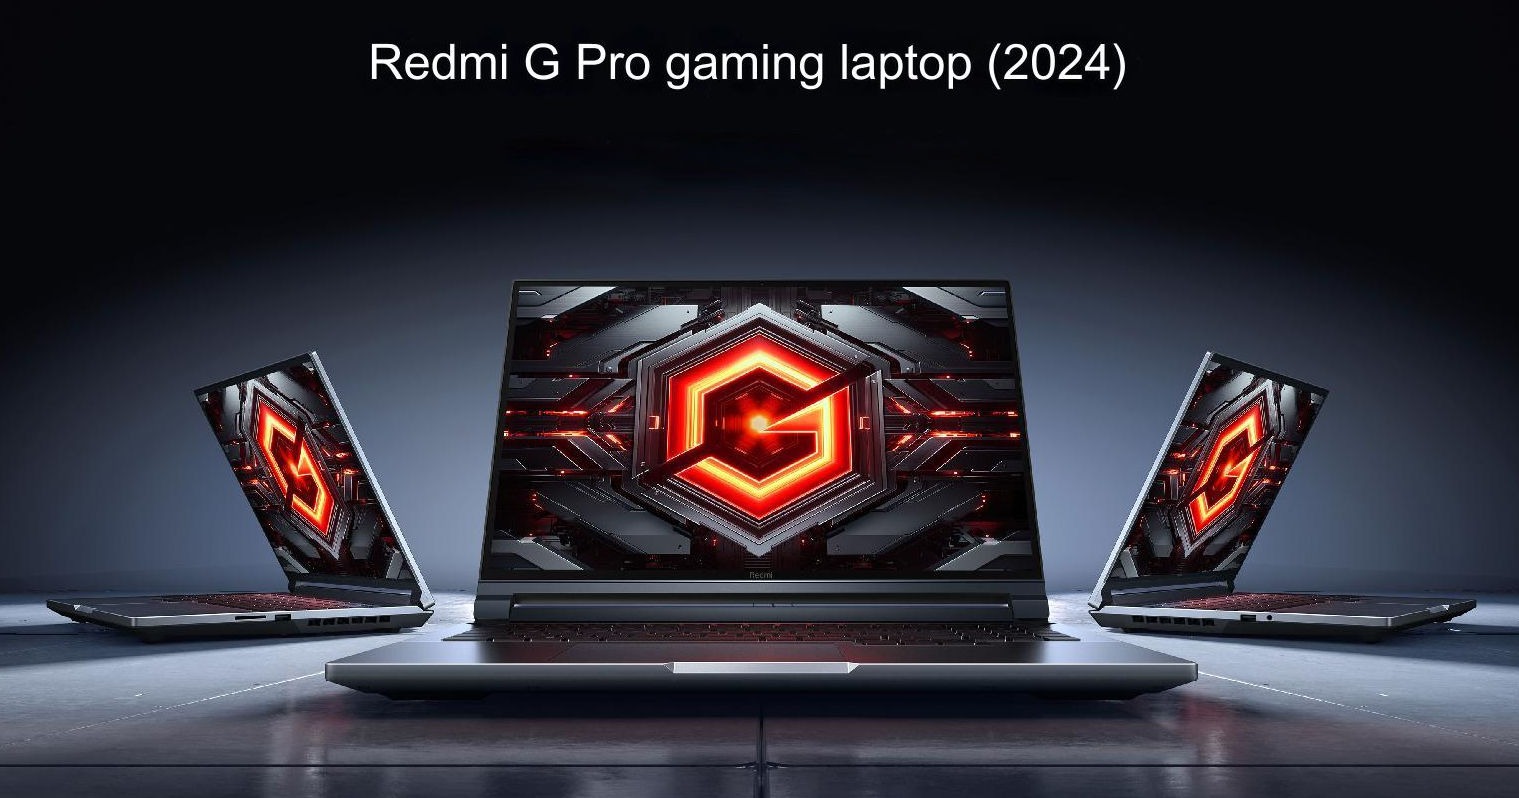 xiaomi trinh lang laptop gaming redmi g pro 2024 hinh 1